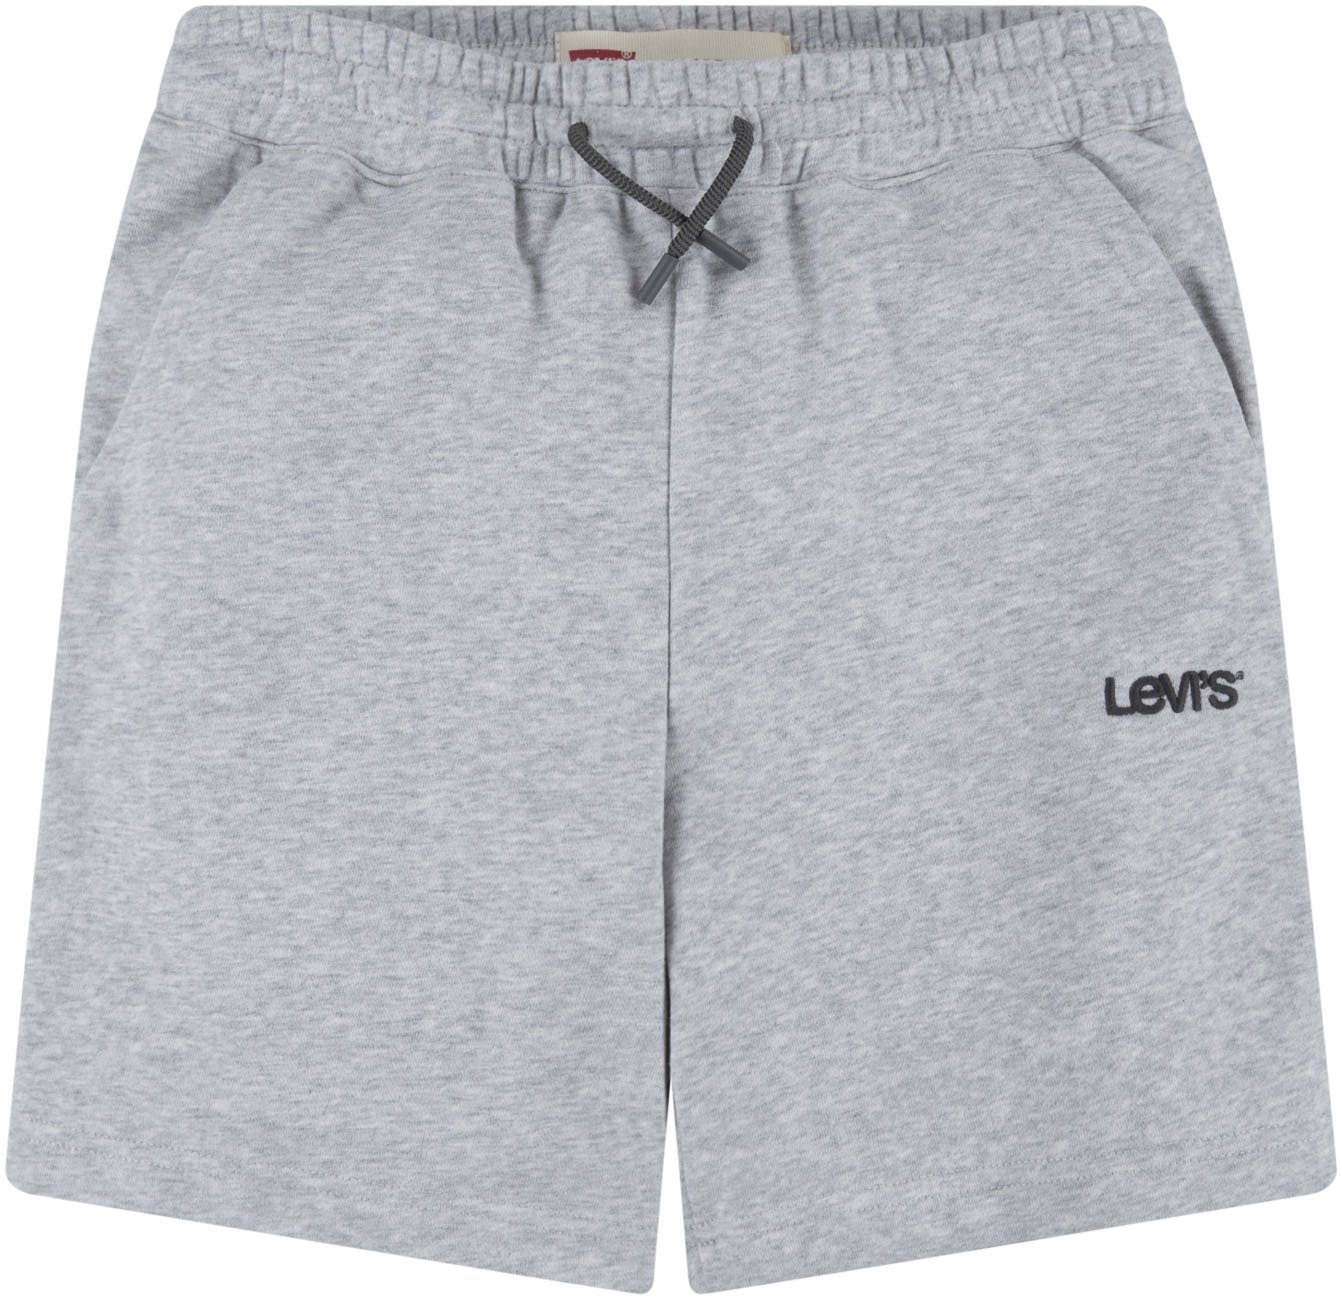 Levi's Kidswear Sweatshort for boys